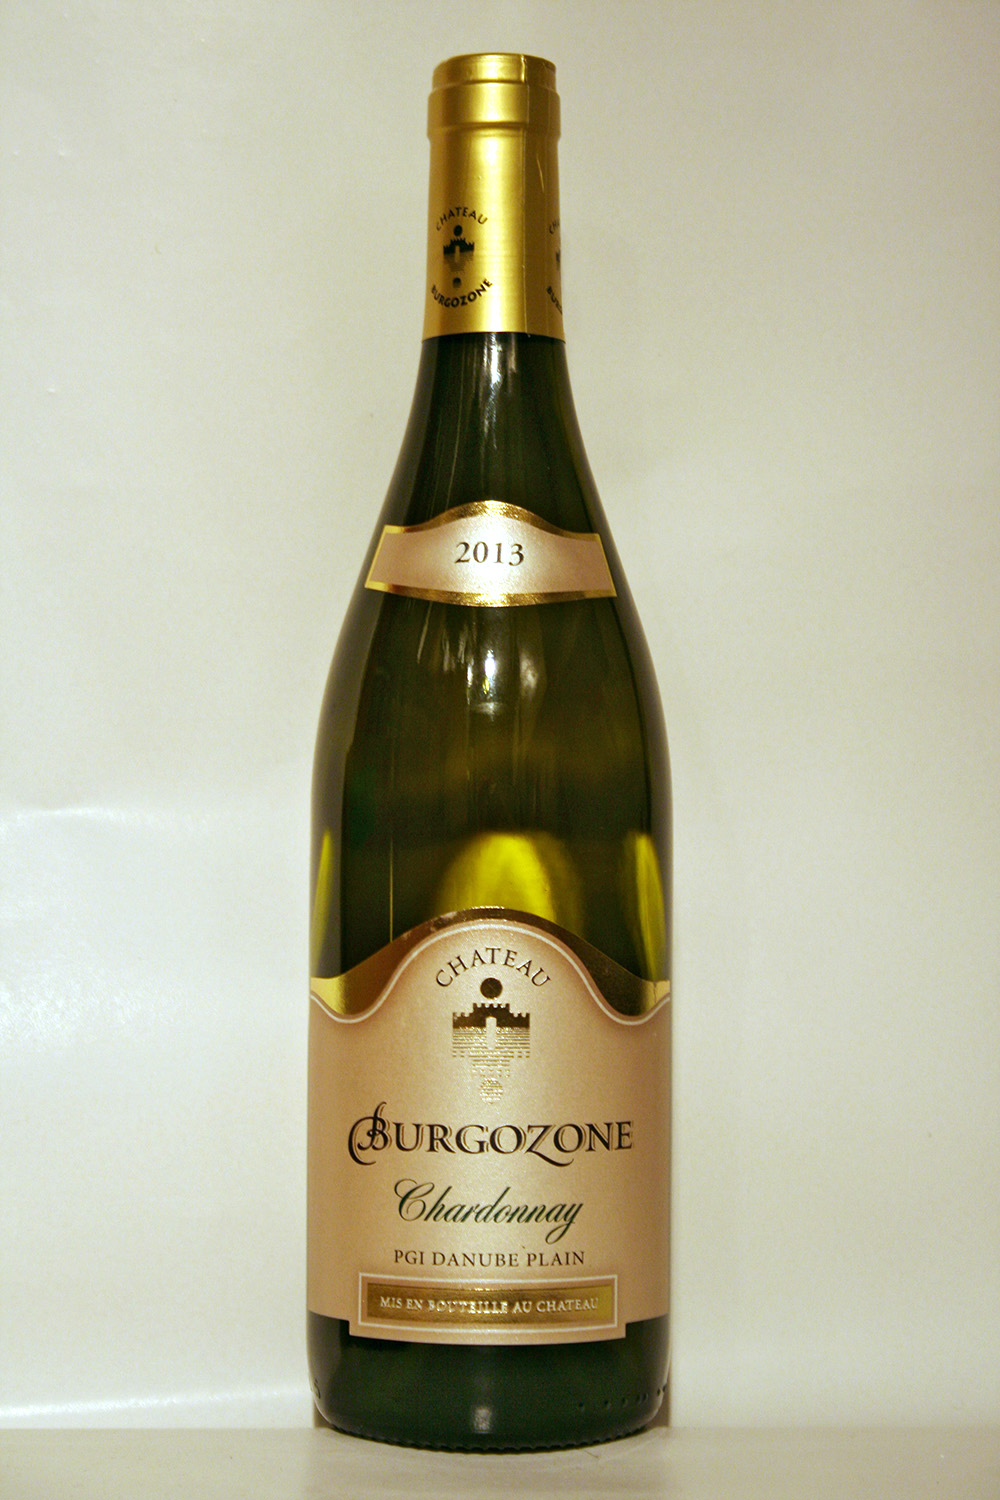 Chateau Burgozone Chardonnay 2013